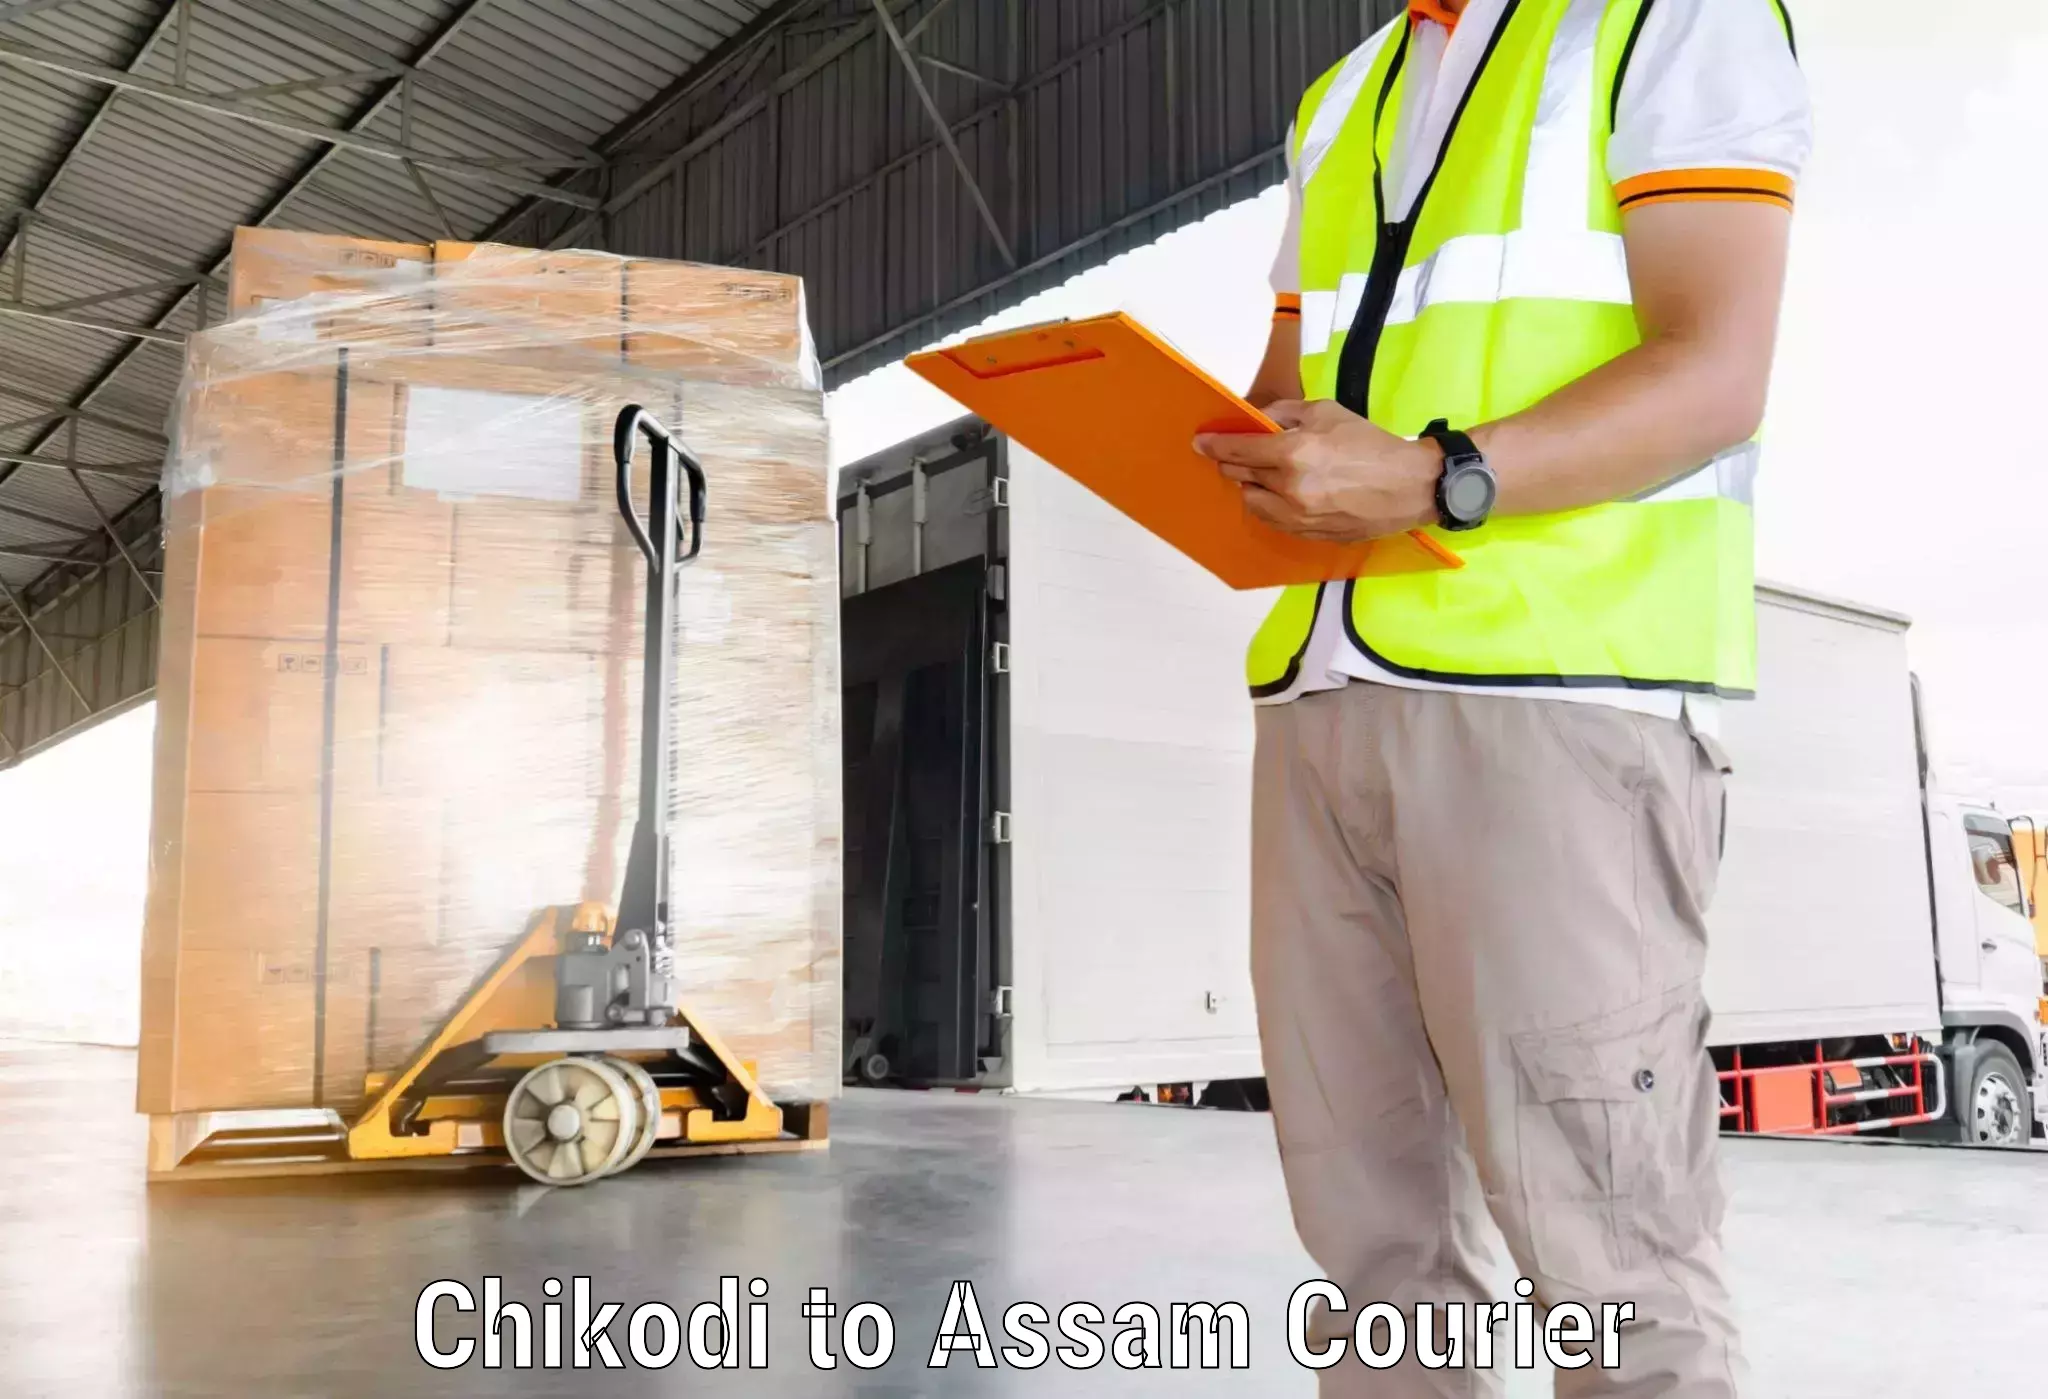 Fast delivery service Chikodi to Mangaldoi